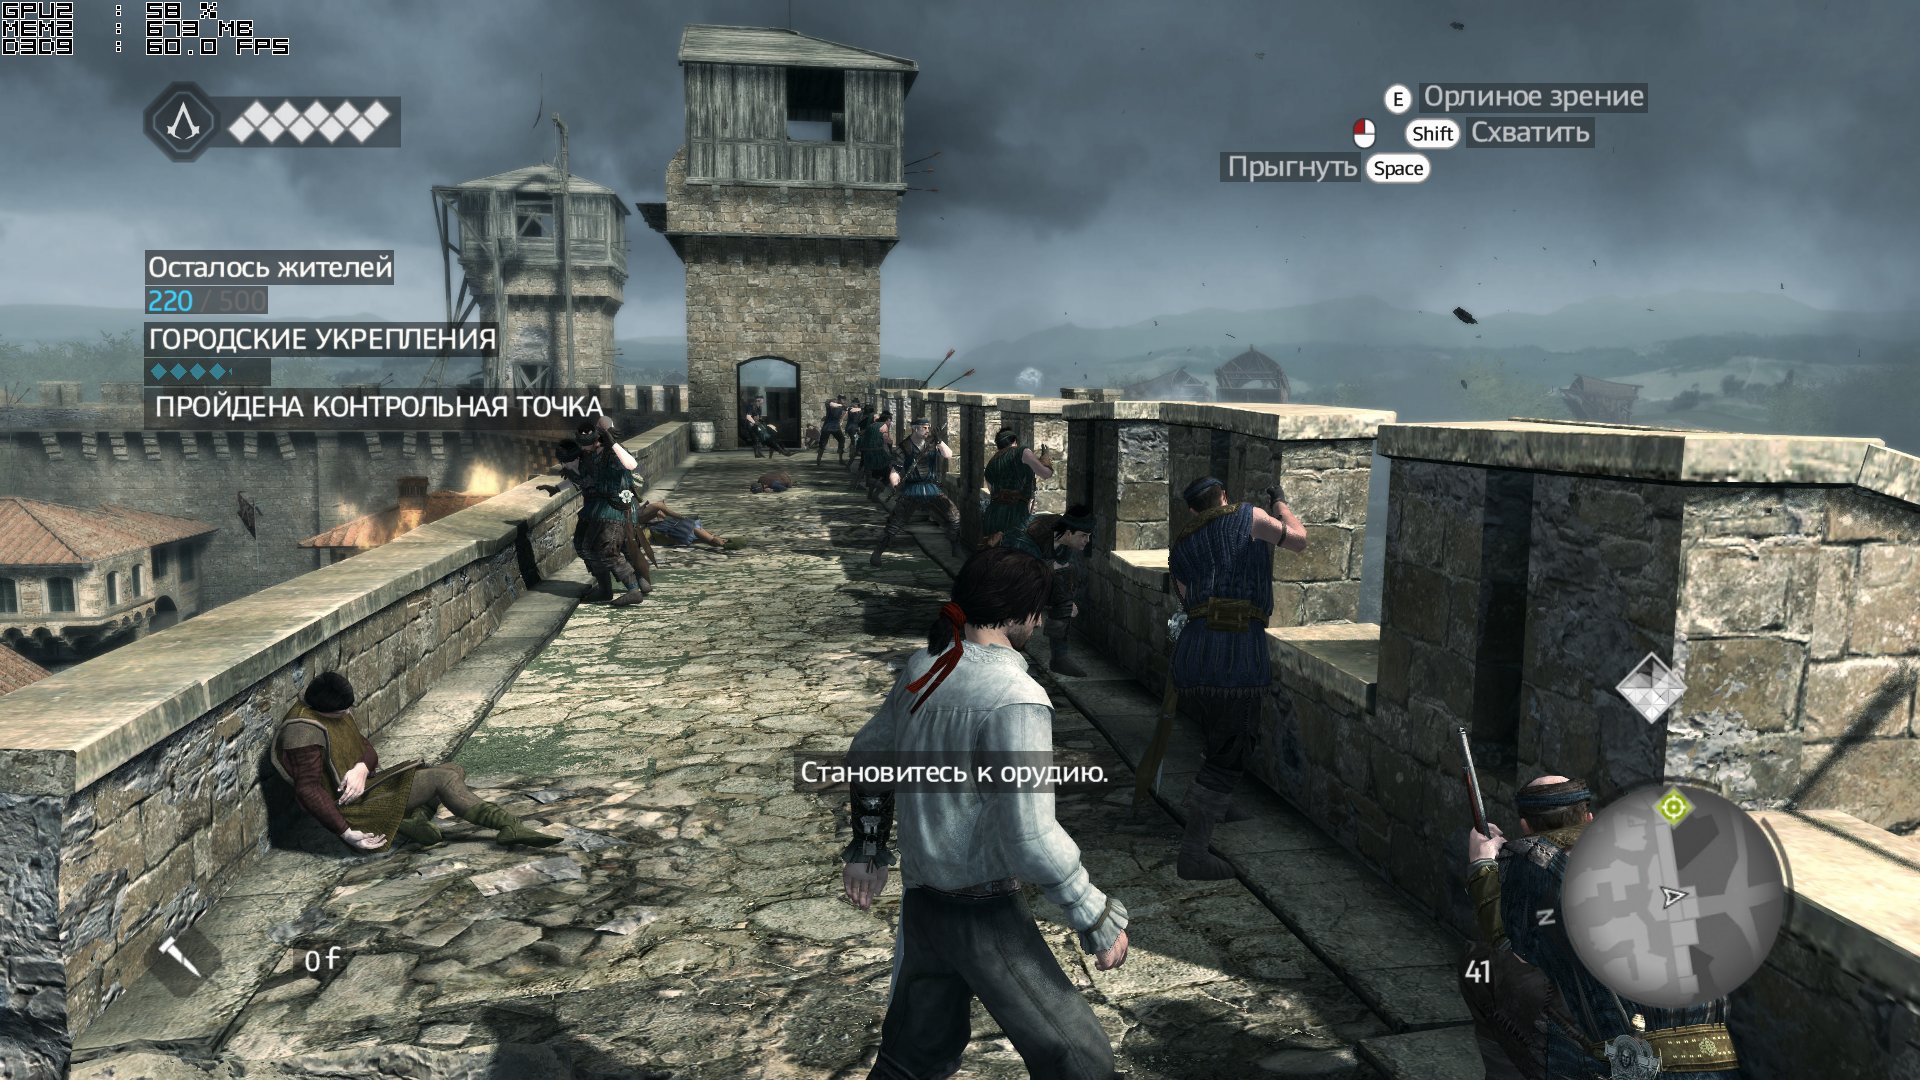 Кос 2 30. Патч на оптимизацию Assassins Creed 3. Игра Крид Brotherhood прыгнуть воду с высоты 25 м.